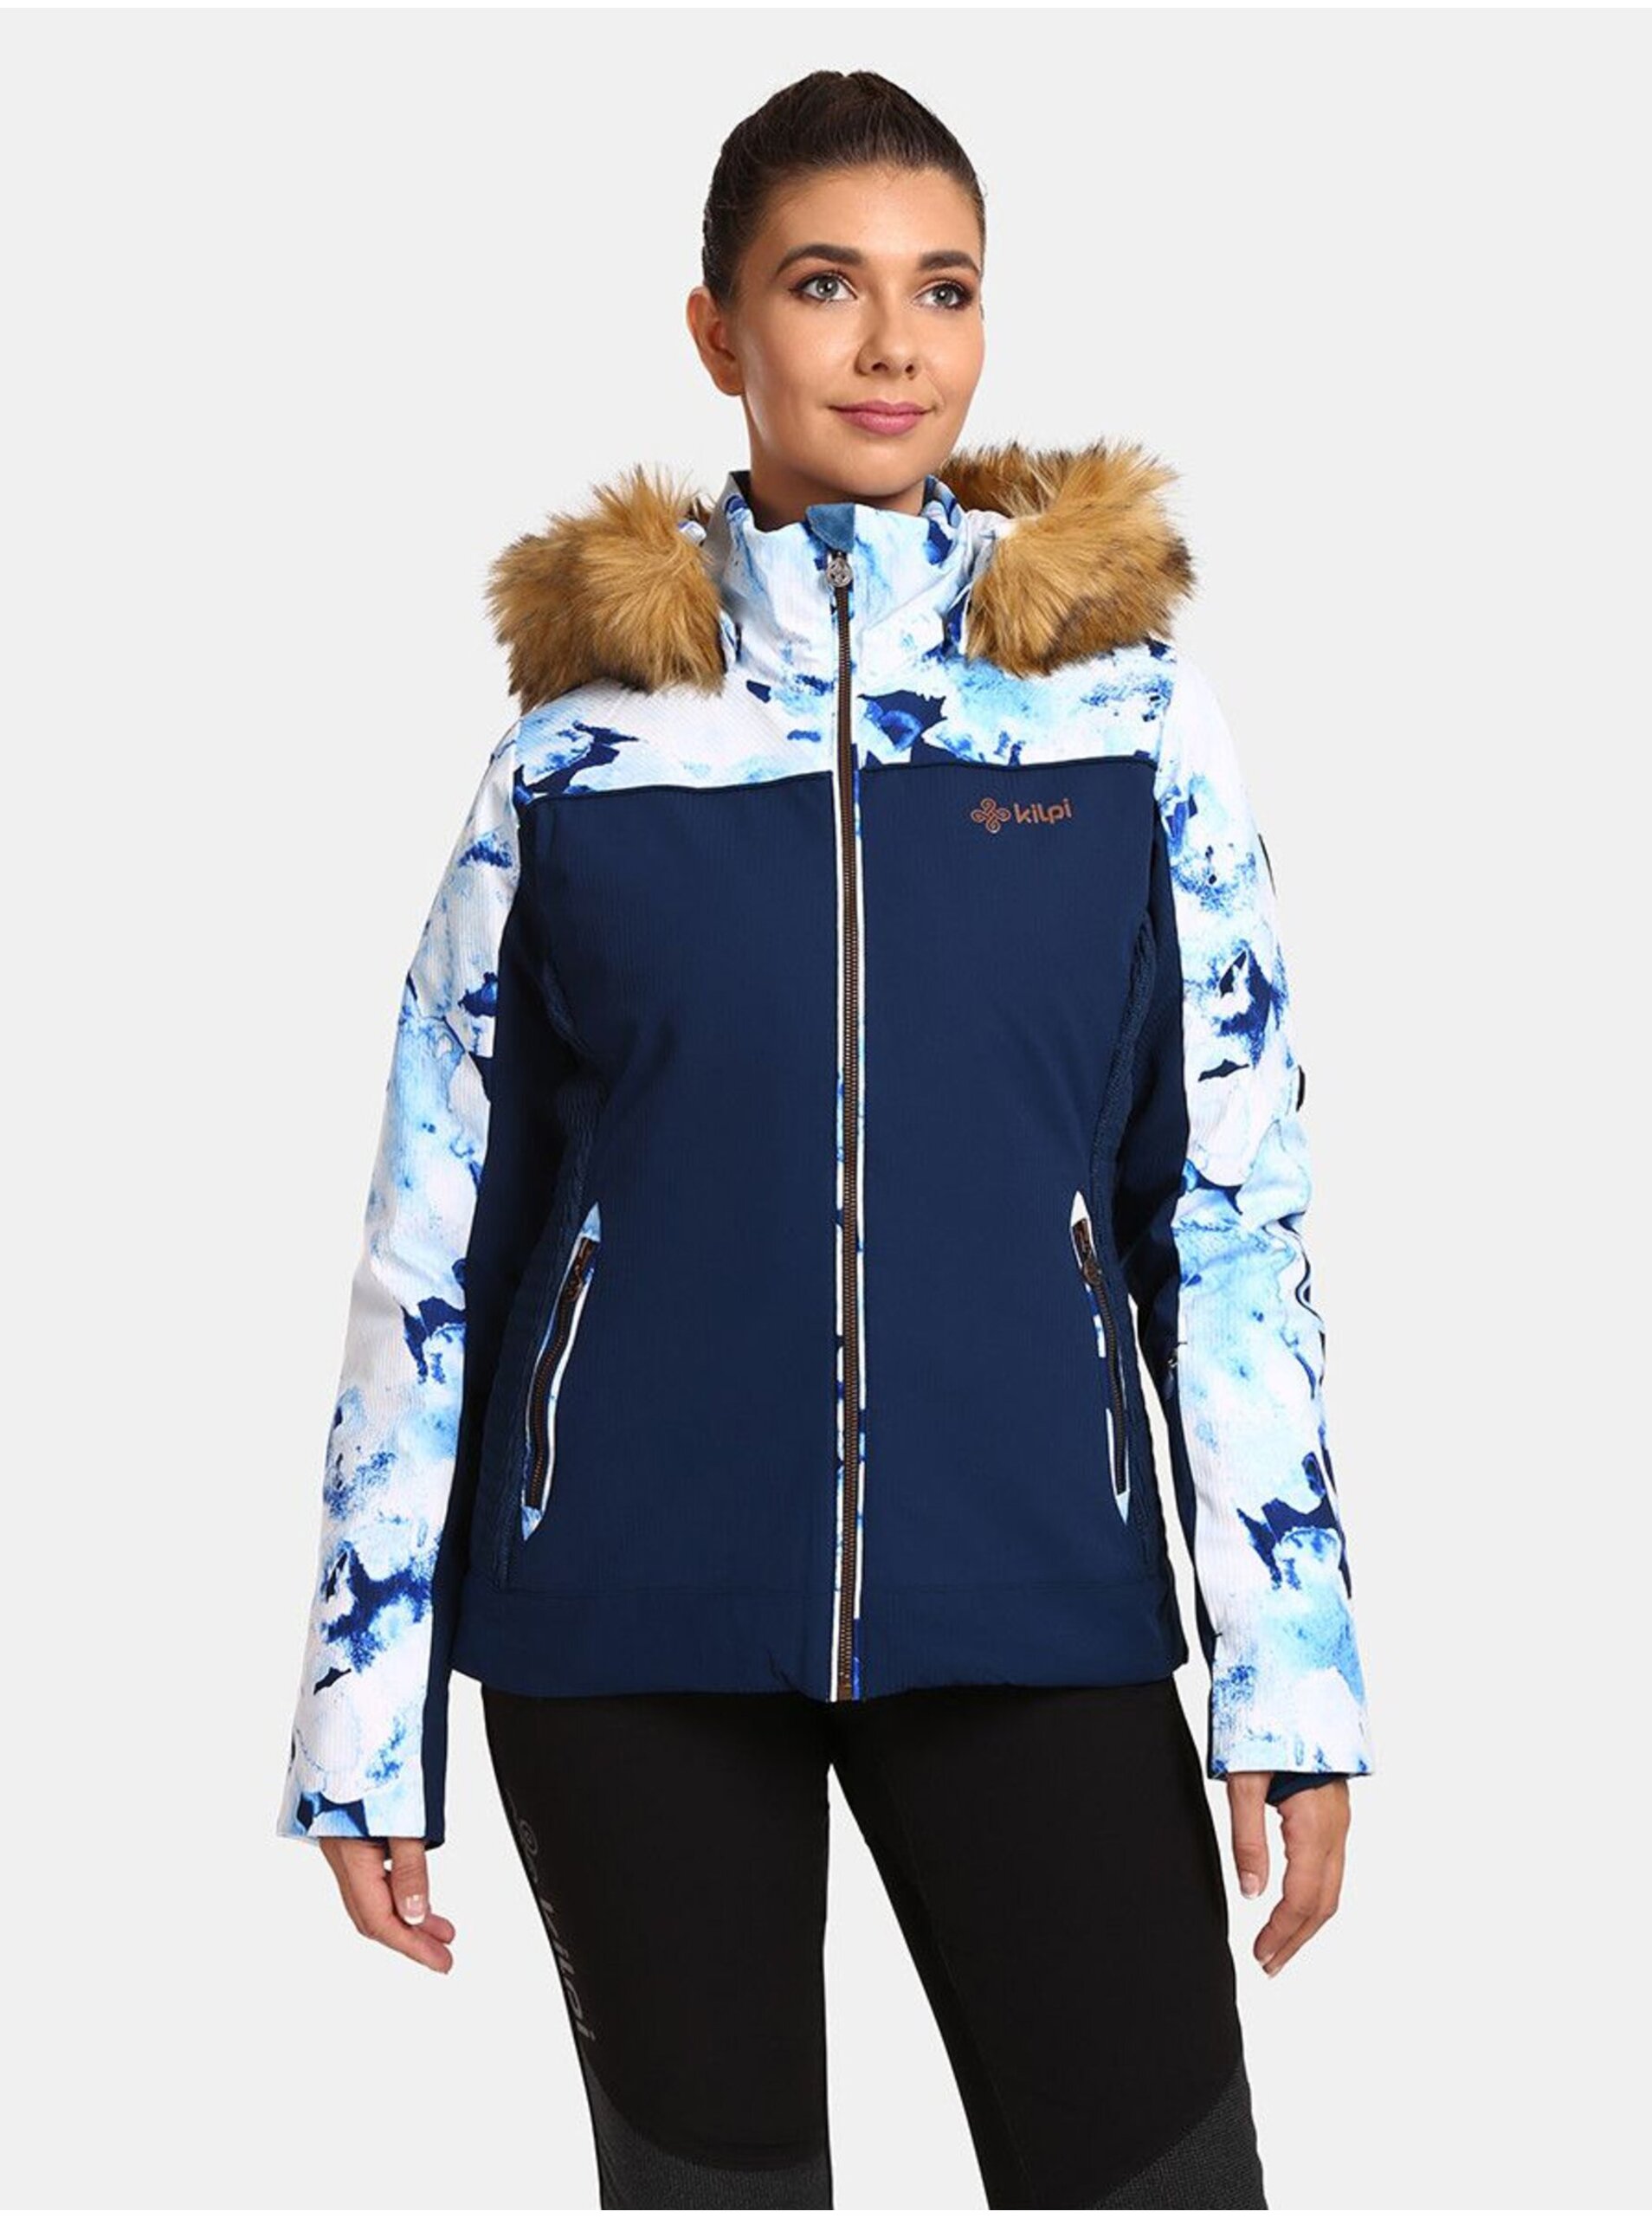 E-shop Tmavě modrá dámská lyžařská vyhřívaná bunda Kilpi Lena-W